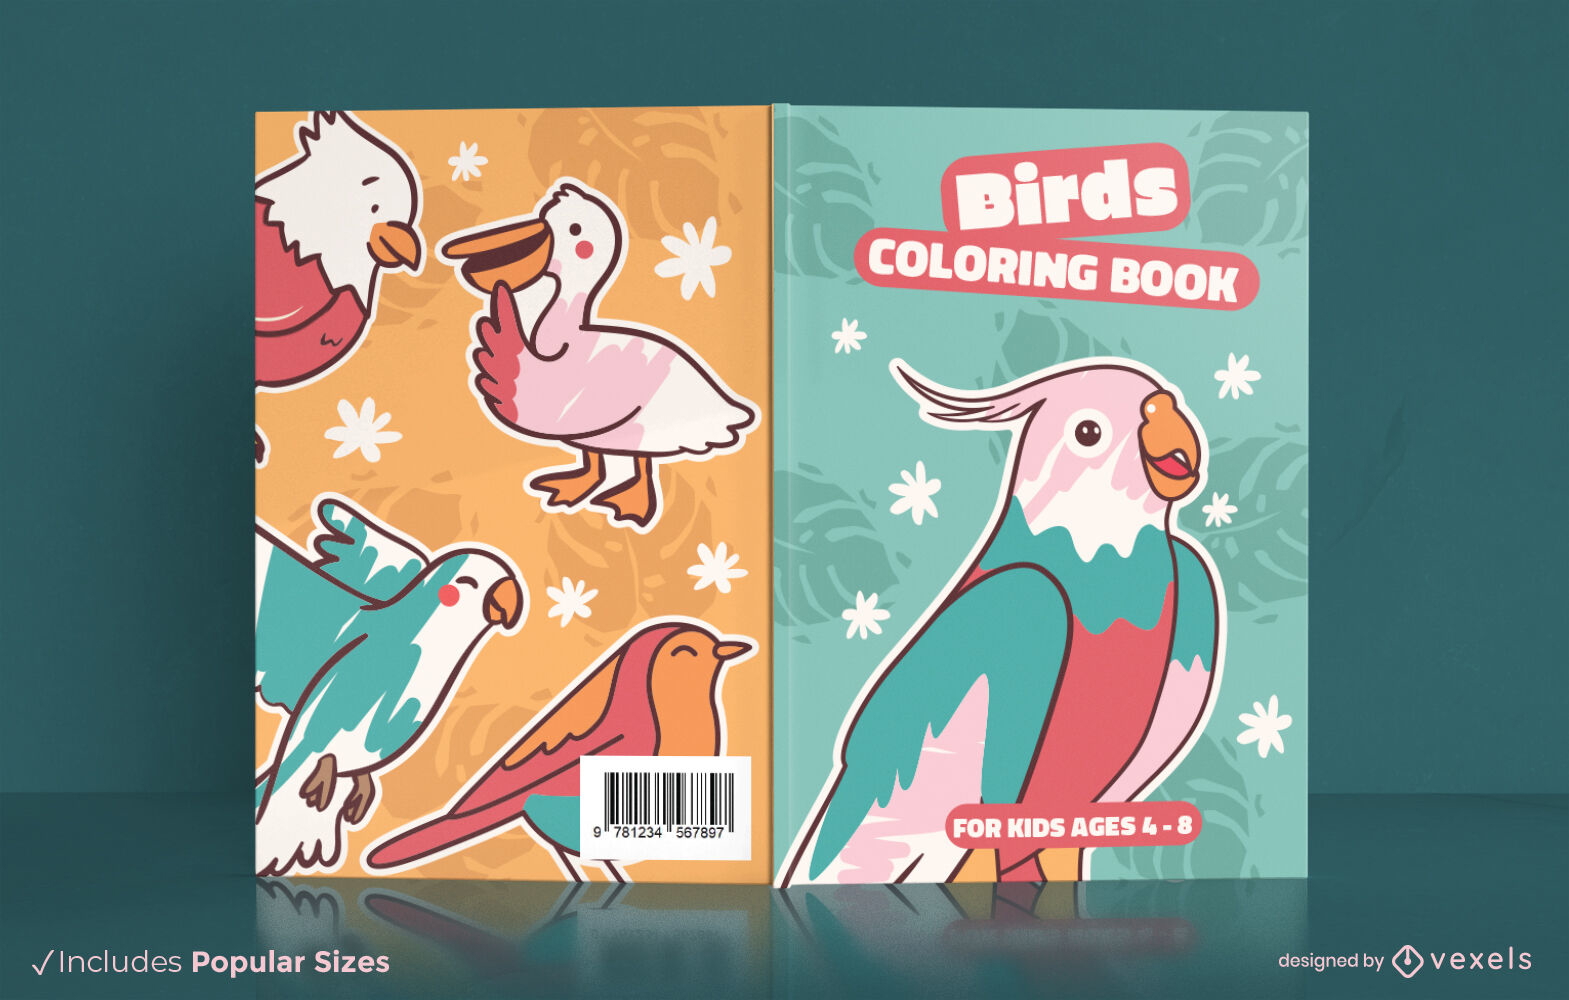 Birds coloring book cover design